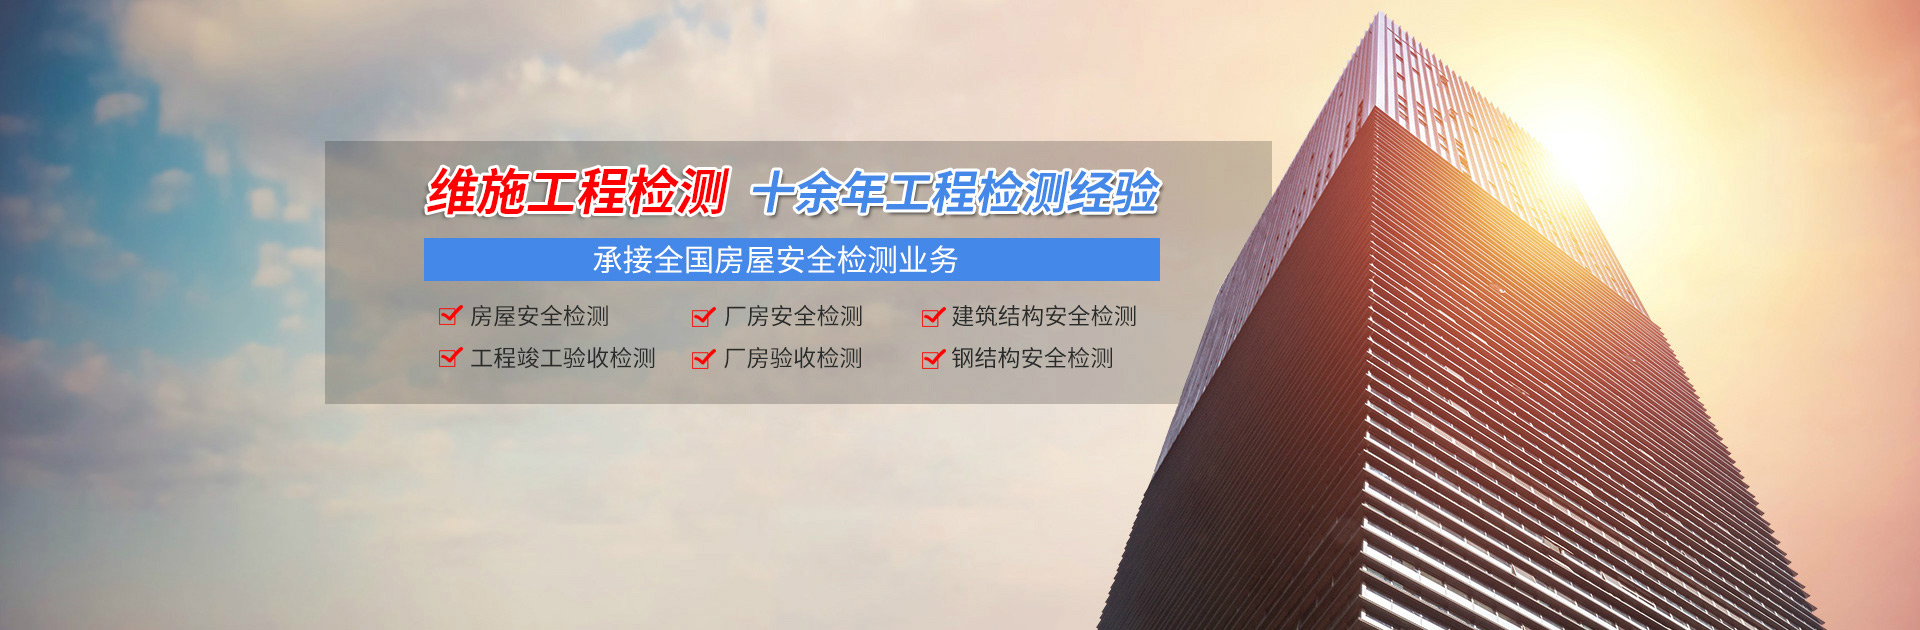 武汉建筑幕墙安全性检测工程检测单位